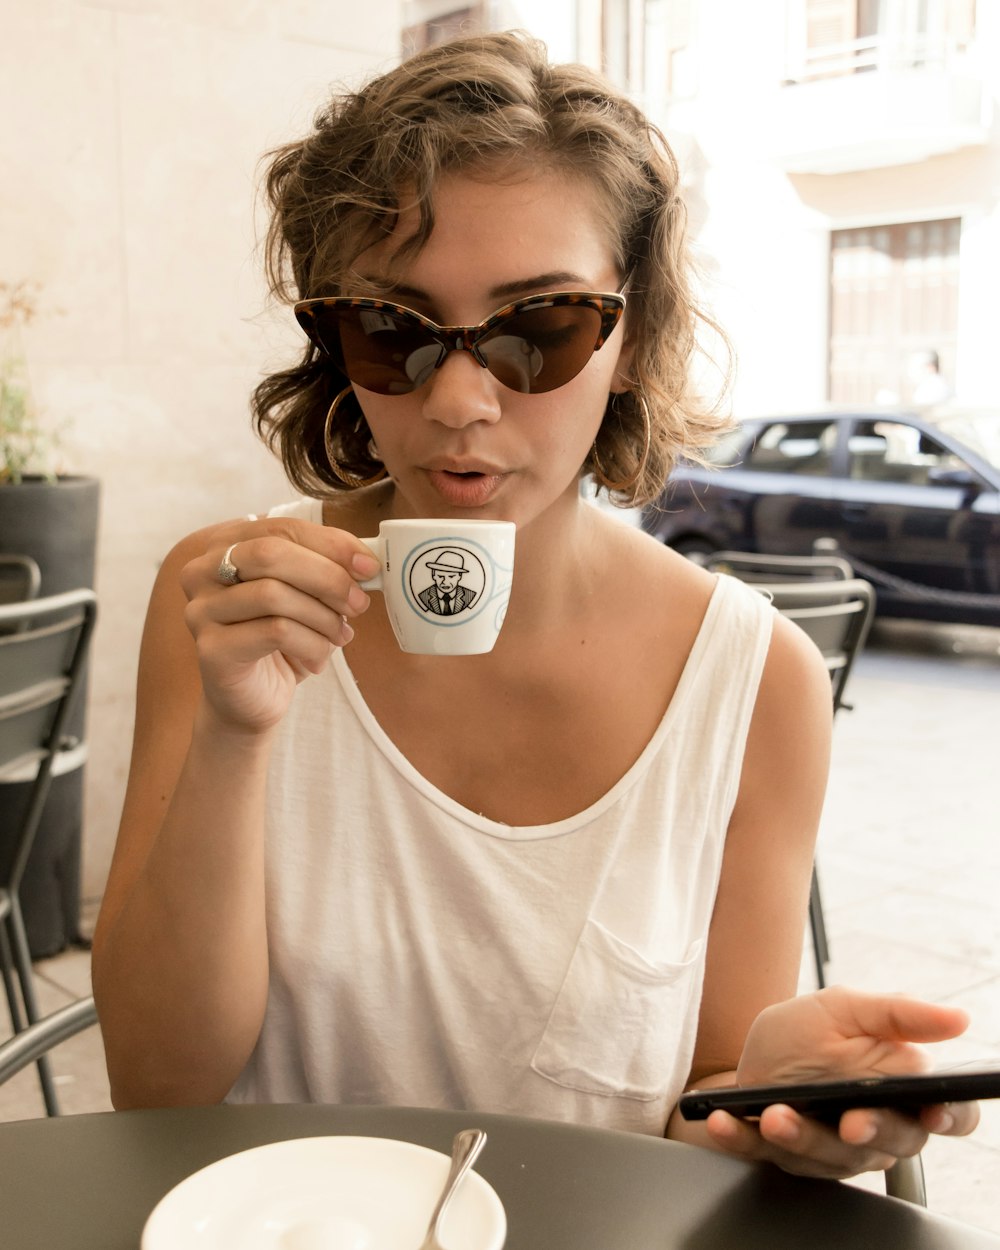 woman in white tank top holding white ceramic mug